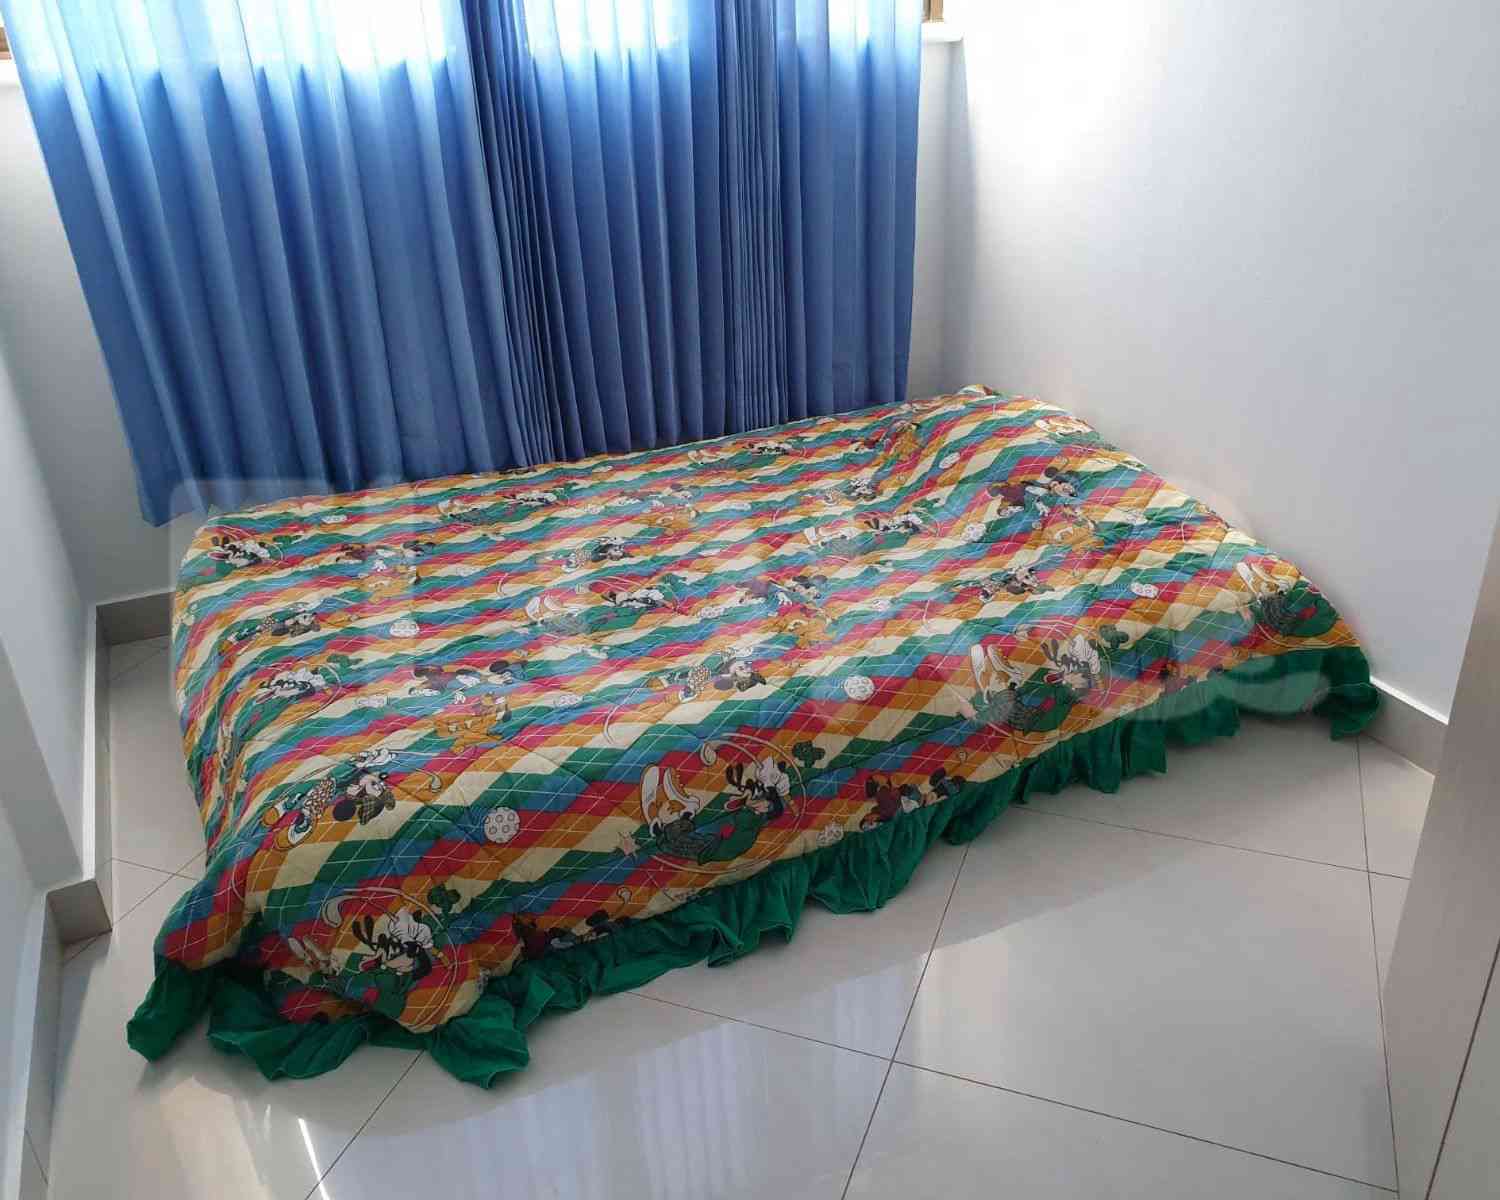 3 Bedroom on 7th Floor for Rent in Taman Rasuna Apartment - fkudaa 5